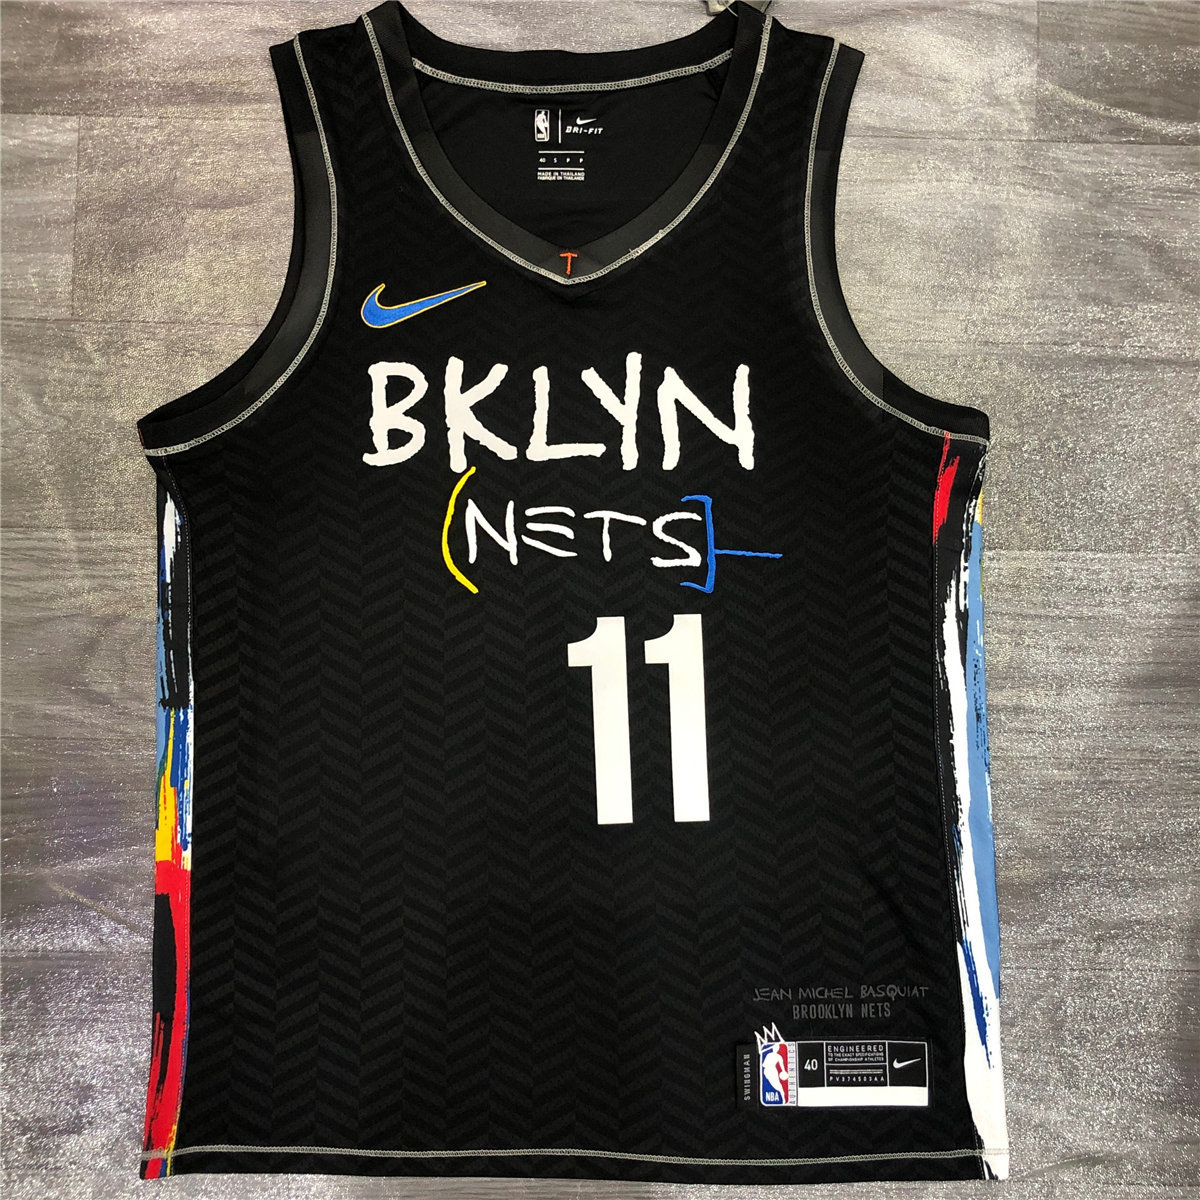 US$ 21.80 - Mens Brooklyn Nets Nike Black 2020/21 Swingman Jersey ...